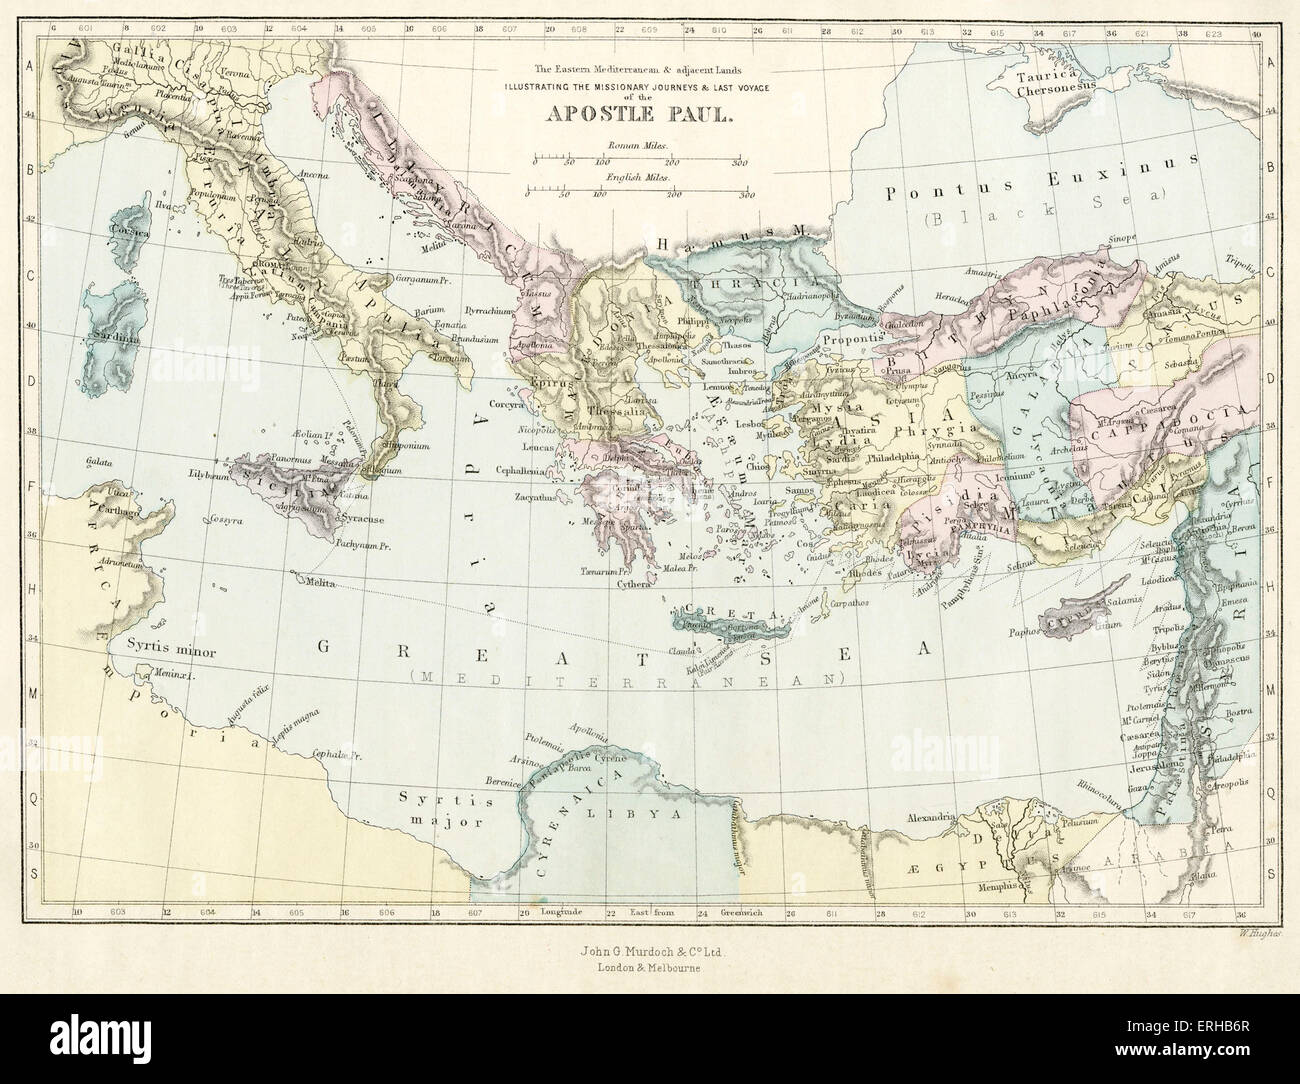 Mapa del siglo xix representando los viajes misioneros y último viaje del apóstol Pablo a través del mediterráneo. Ilustración por Philip Morris R (1836-1902). Foto de stock